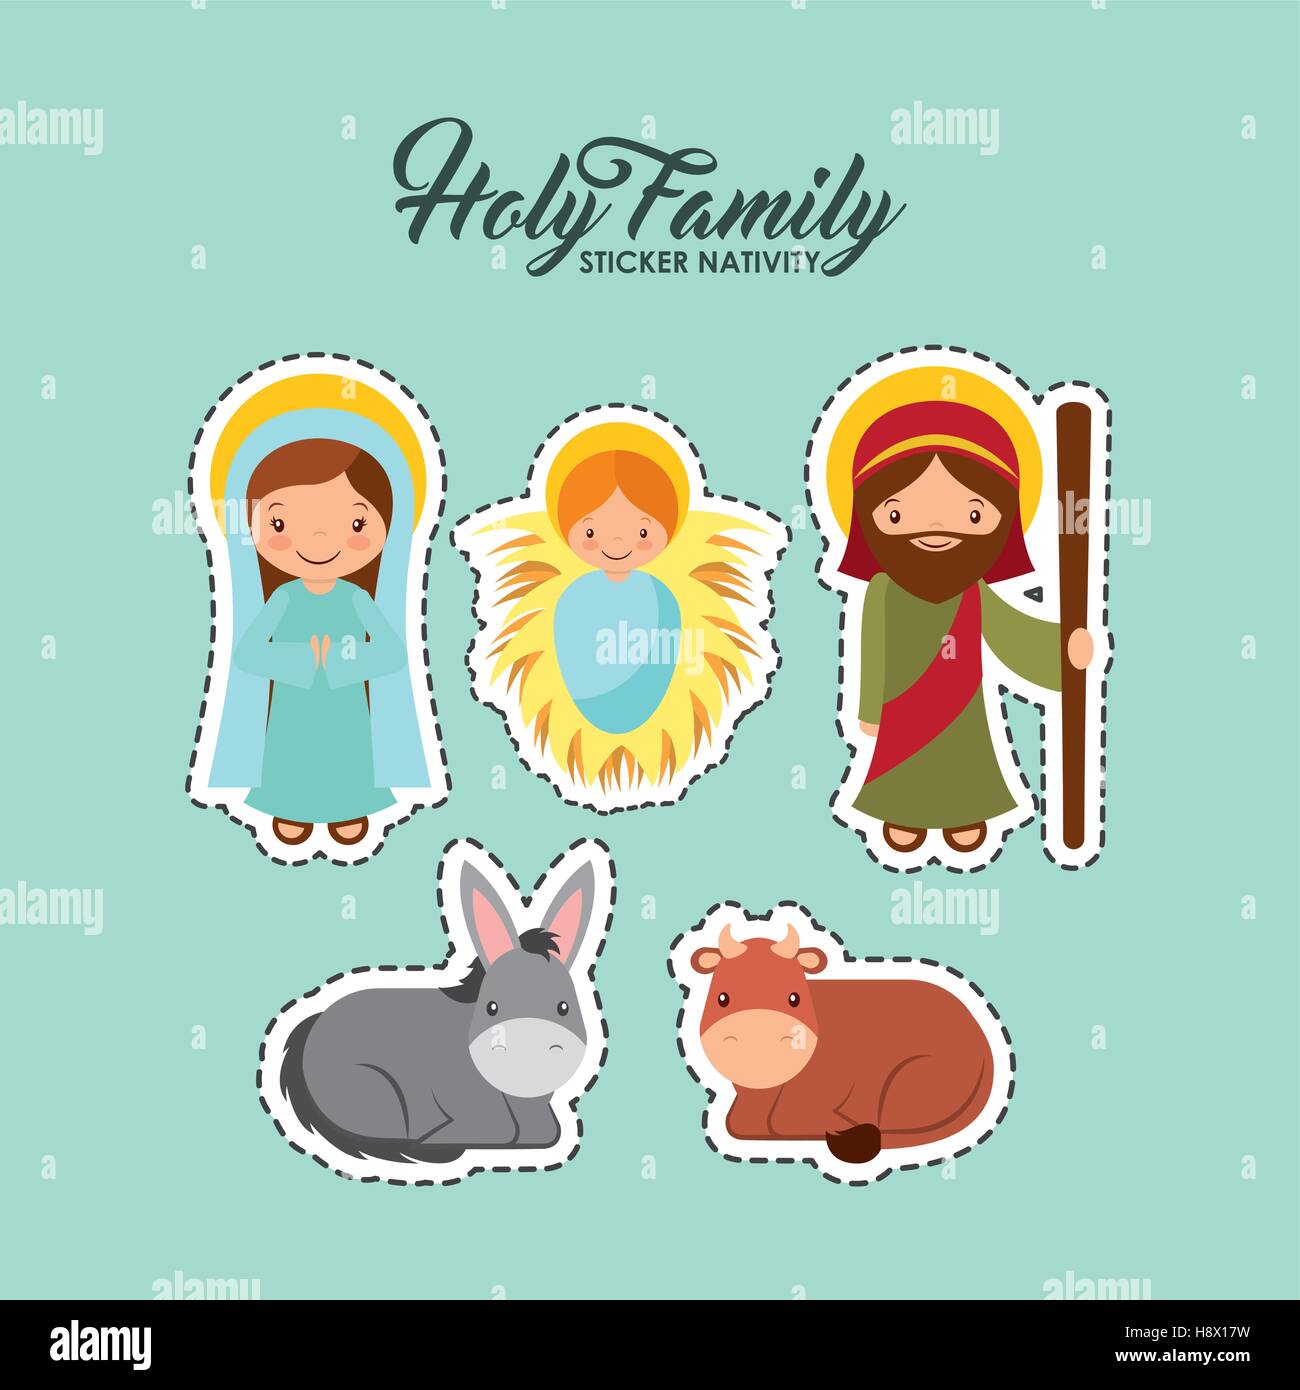 sticker nativity of holy family manger scene merry christmas colorful design vector illustration